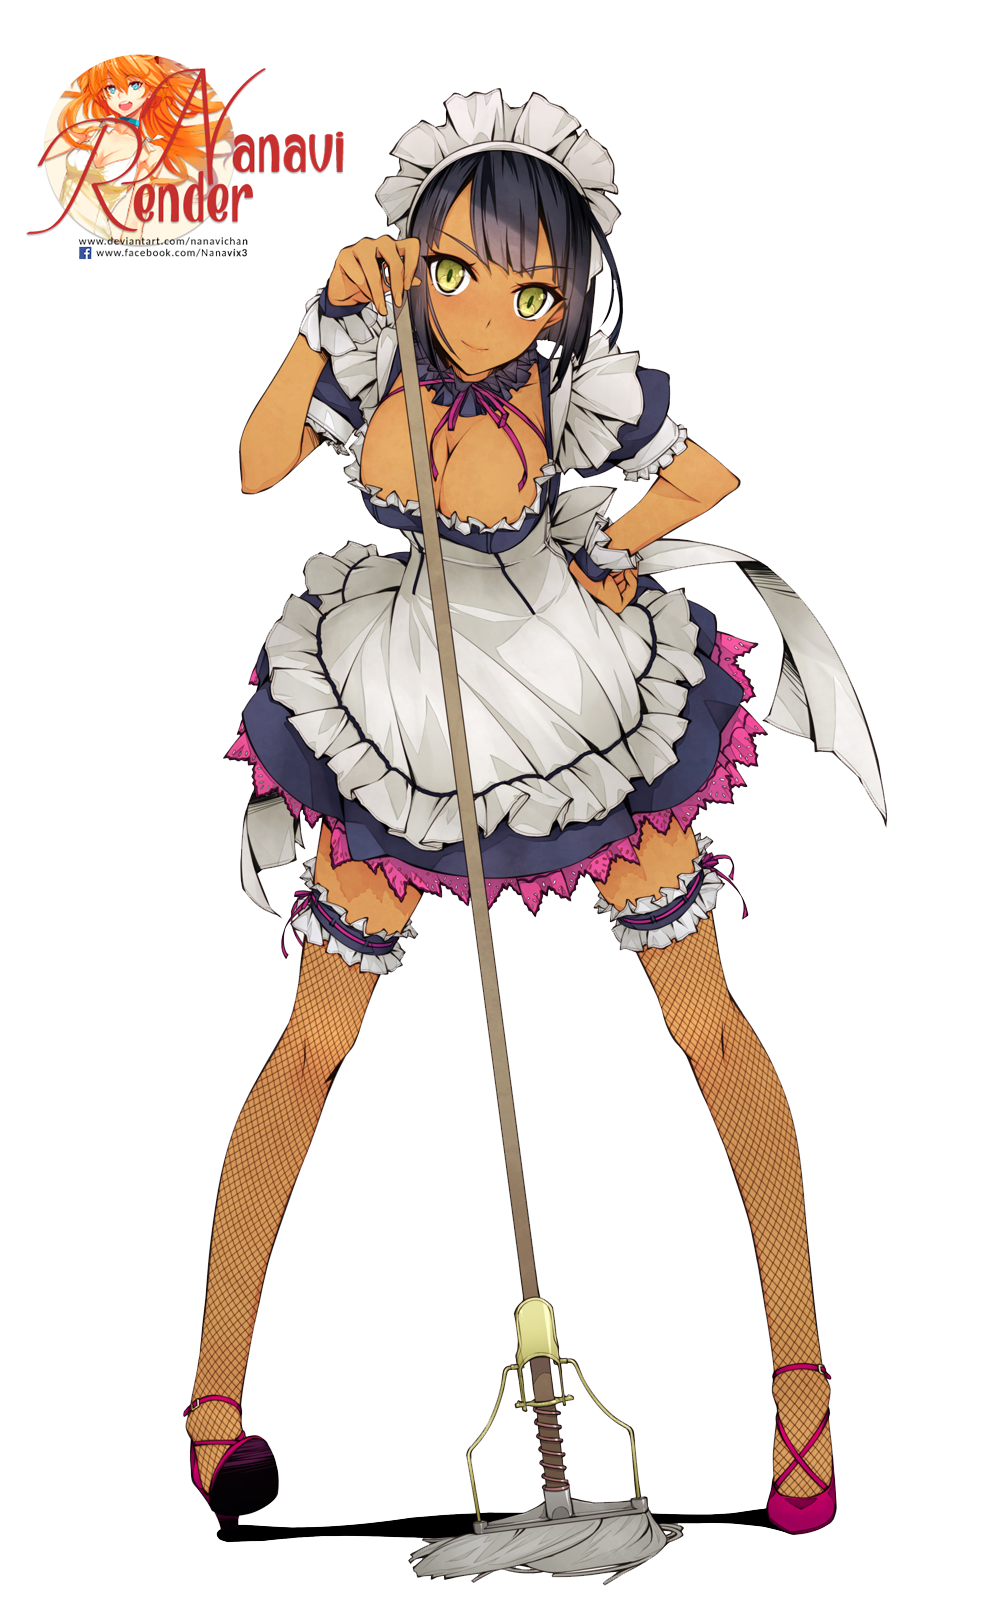 Anime Girl Render by Nanavichan on DeviantArt